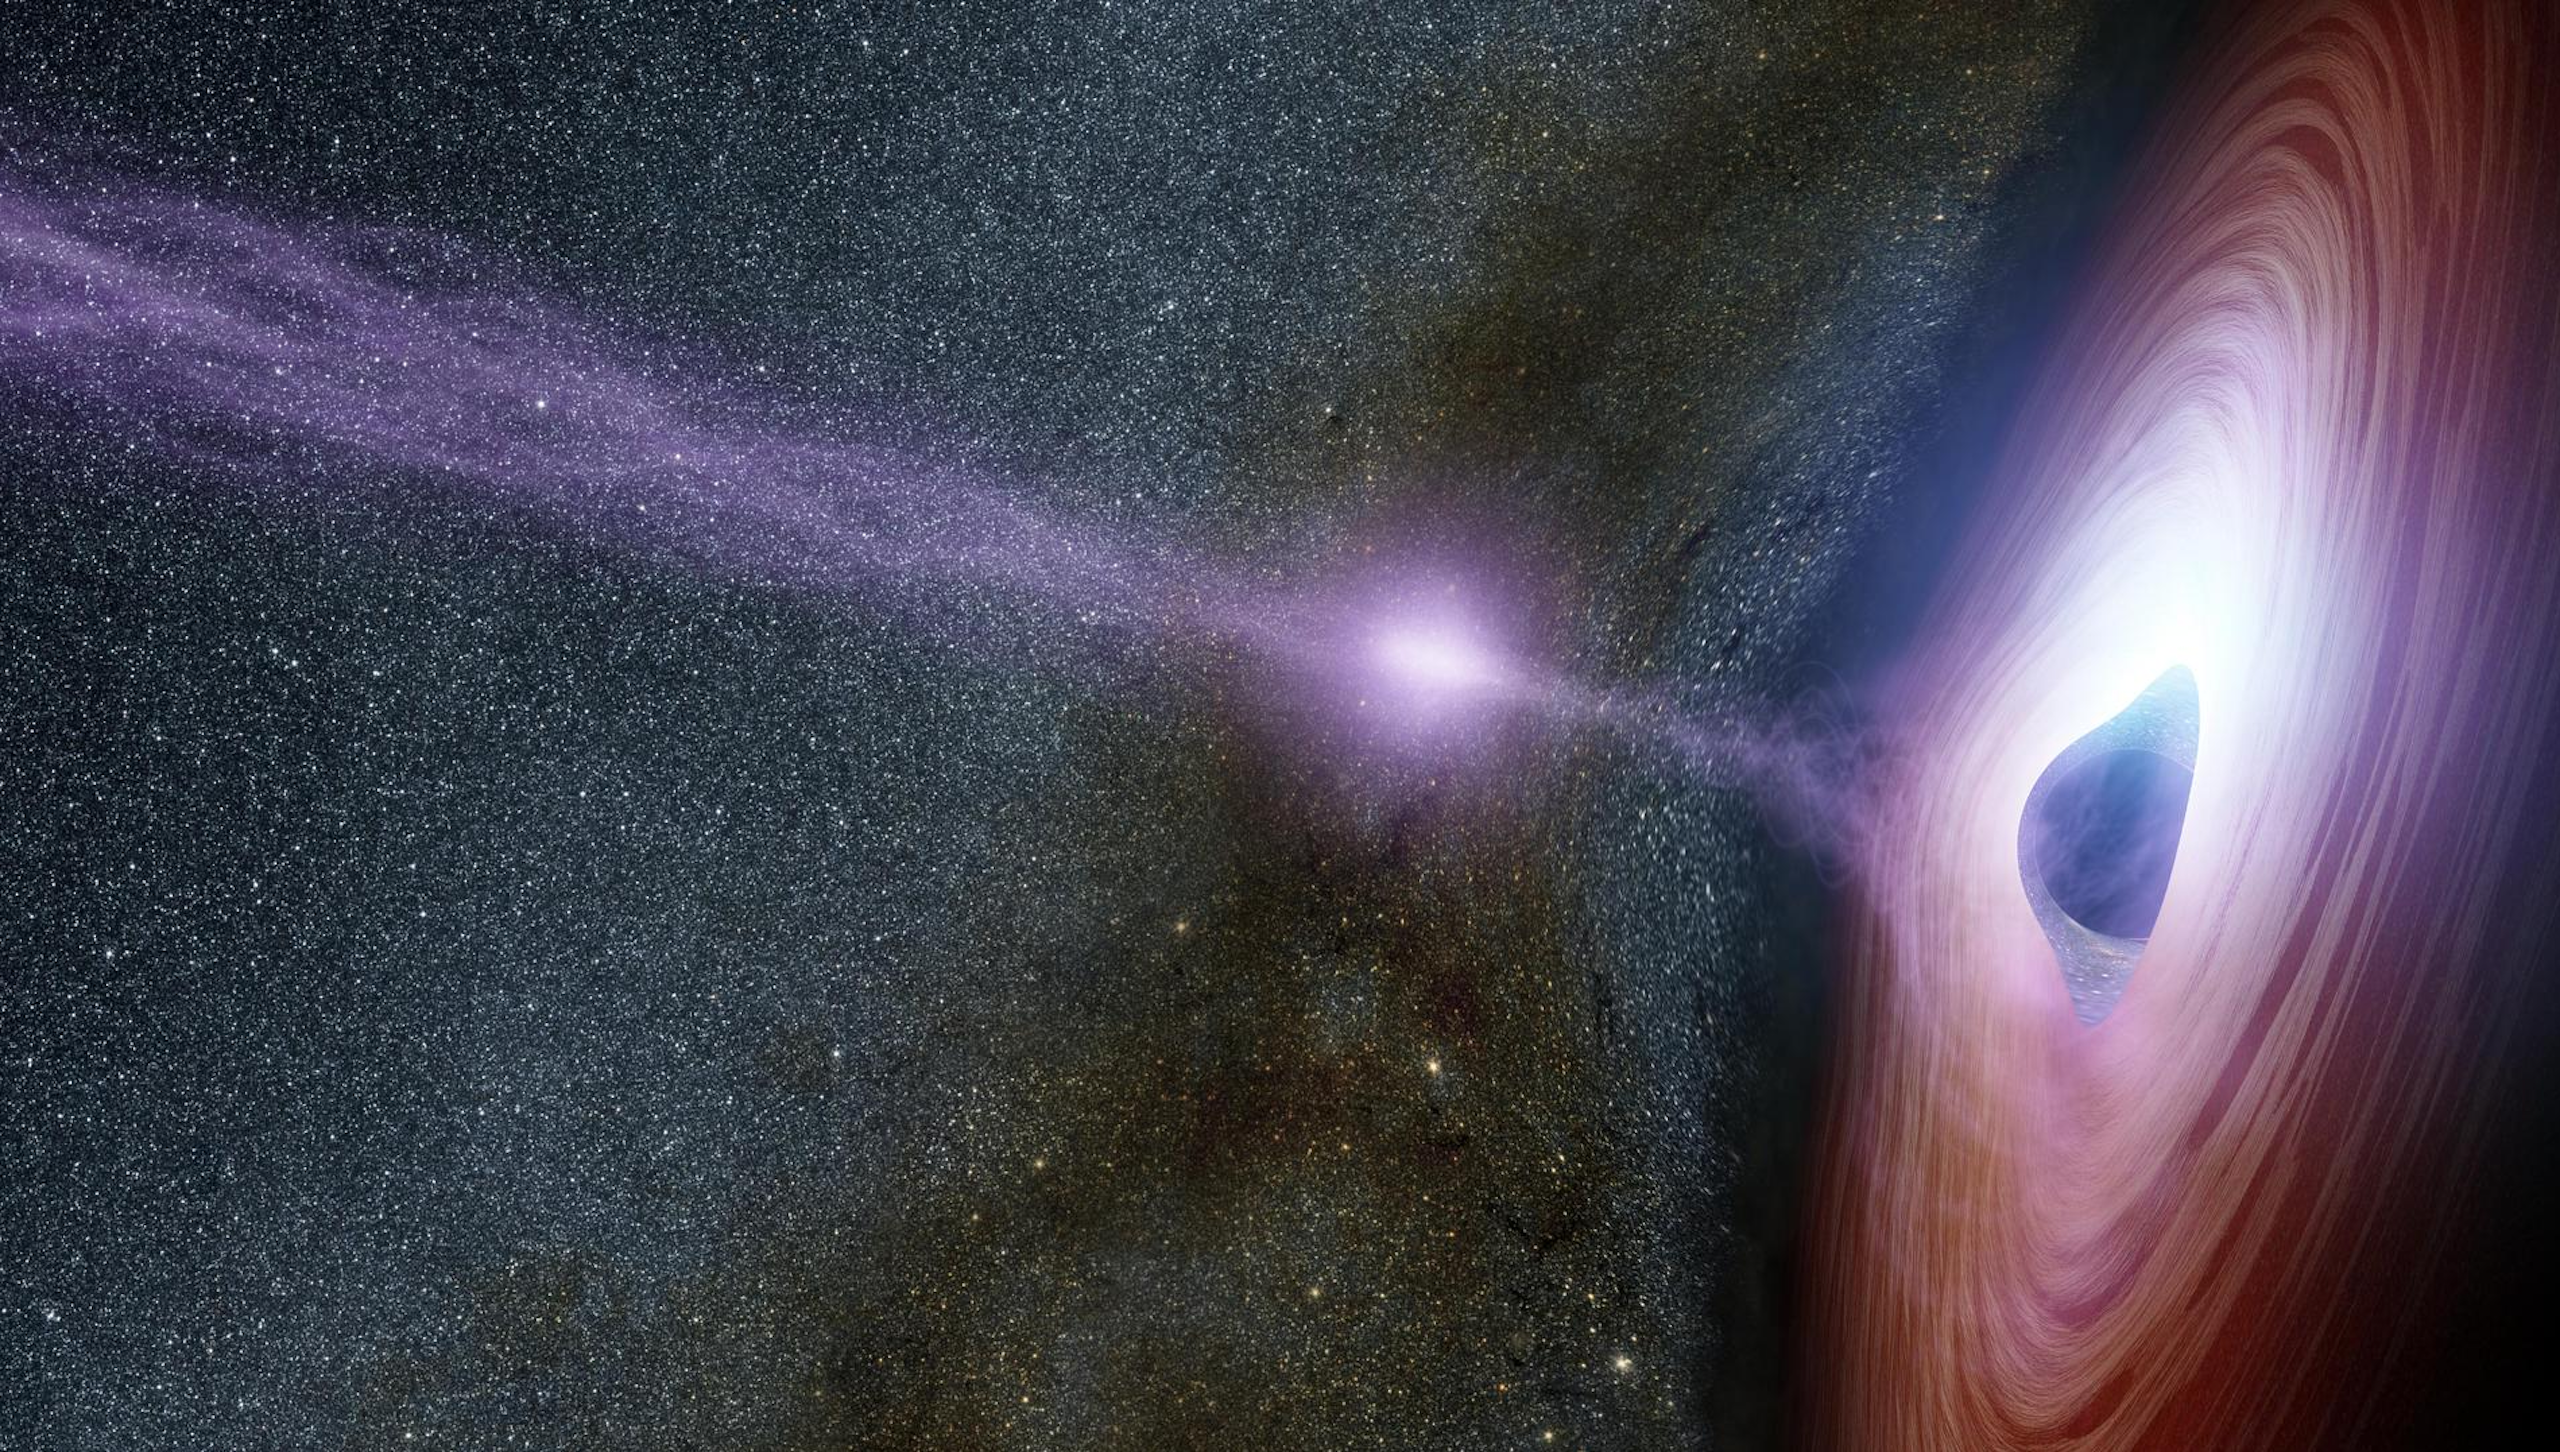 Ilustração de um buraco negro supermaciço, com um feixe de energia saindo de seu centro